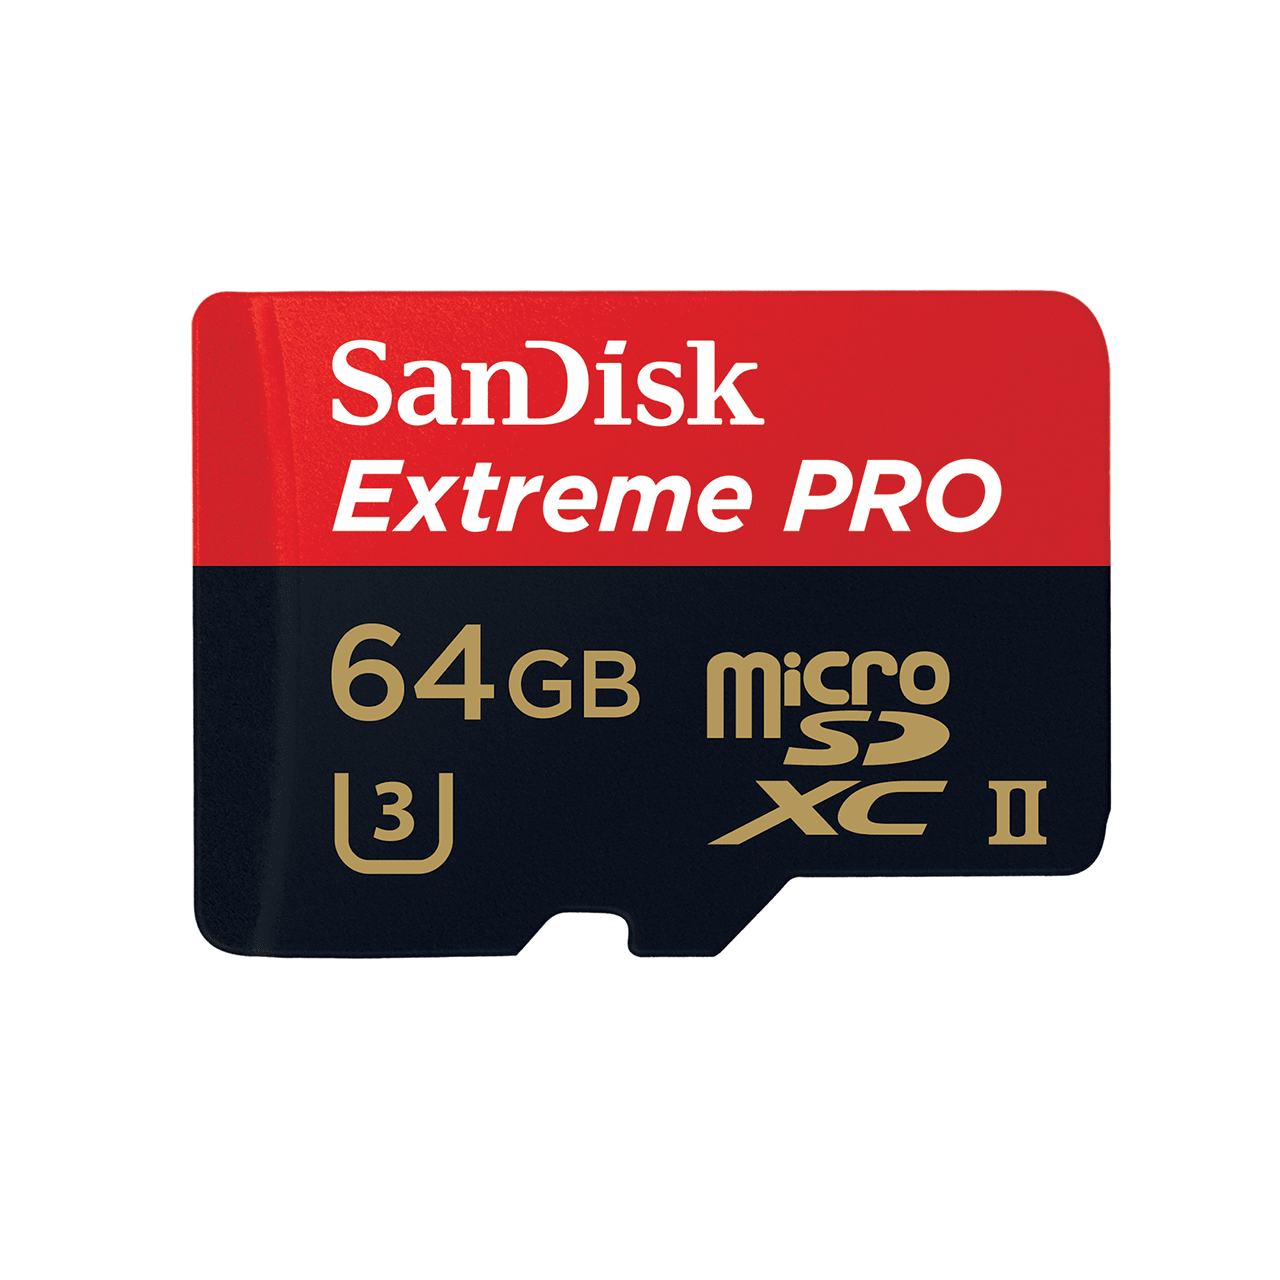 SanDisk Extreme Pro microSDXC UHS-II Card 64GB - Image1